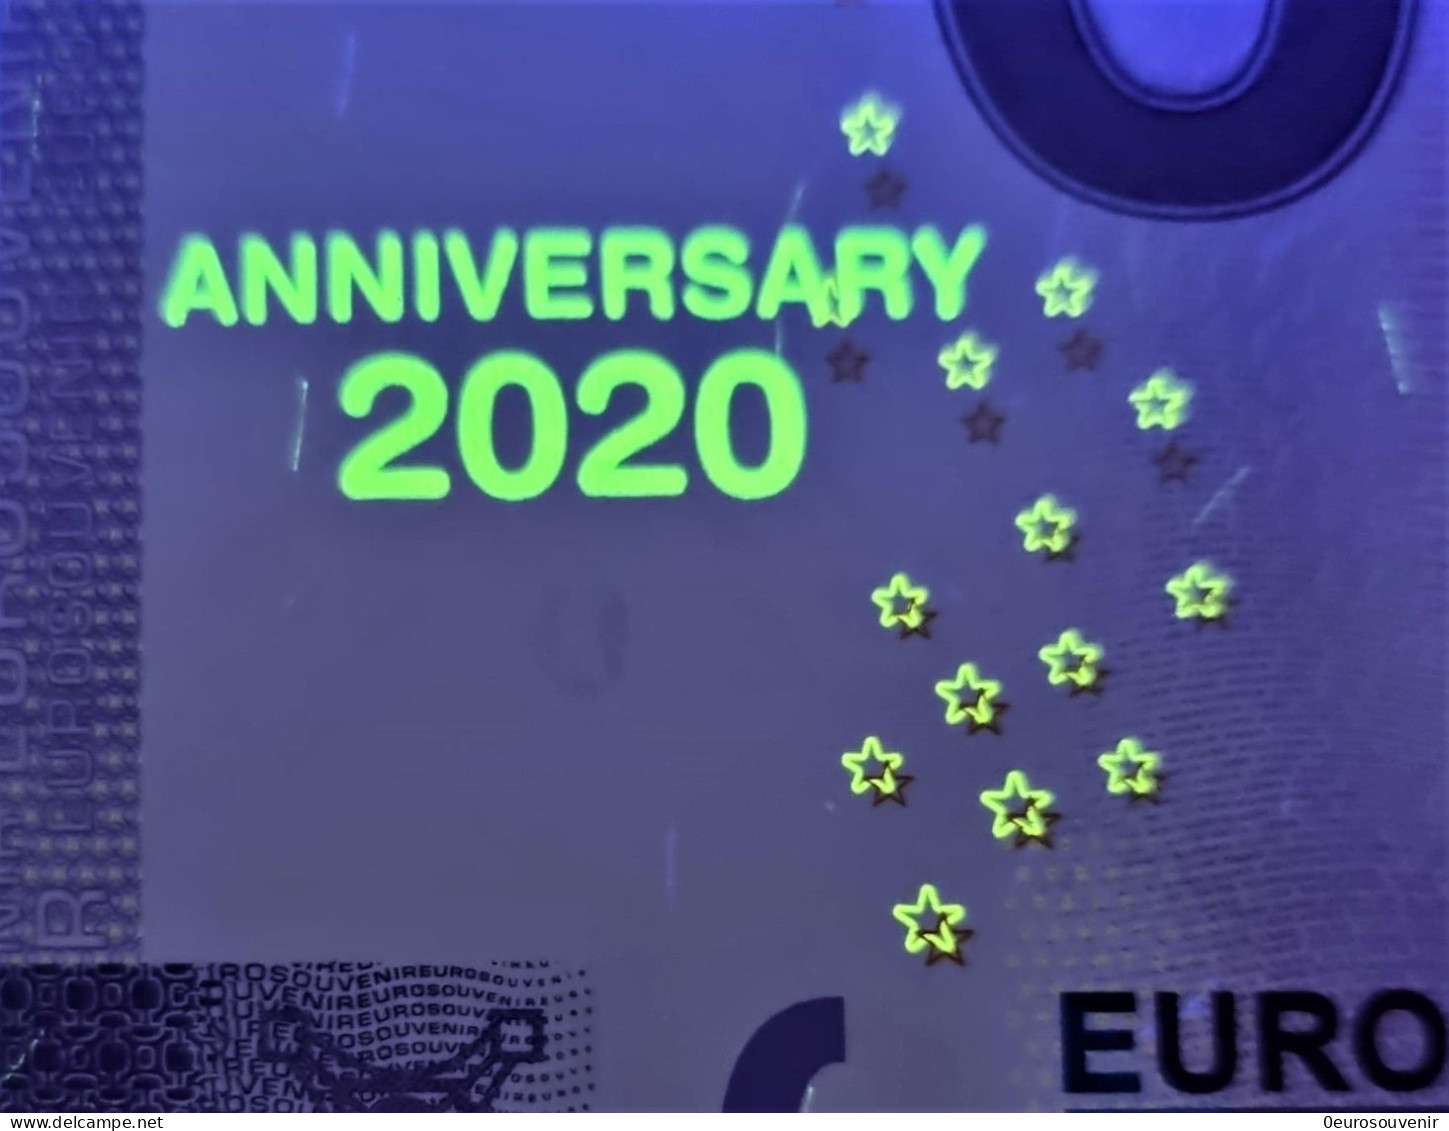 0-Euro XEJQ 2021-5 BERLINER SCHLOSS Set NORMAL+ANNIVERSARY - Privatentwürfe